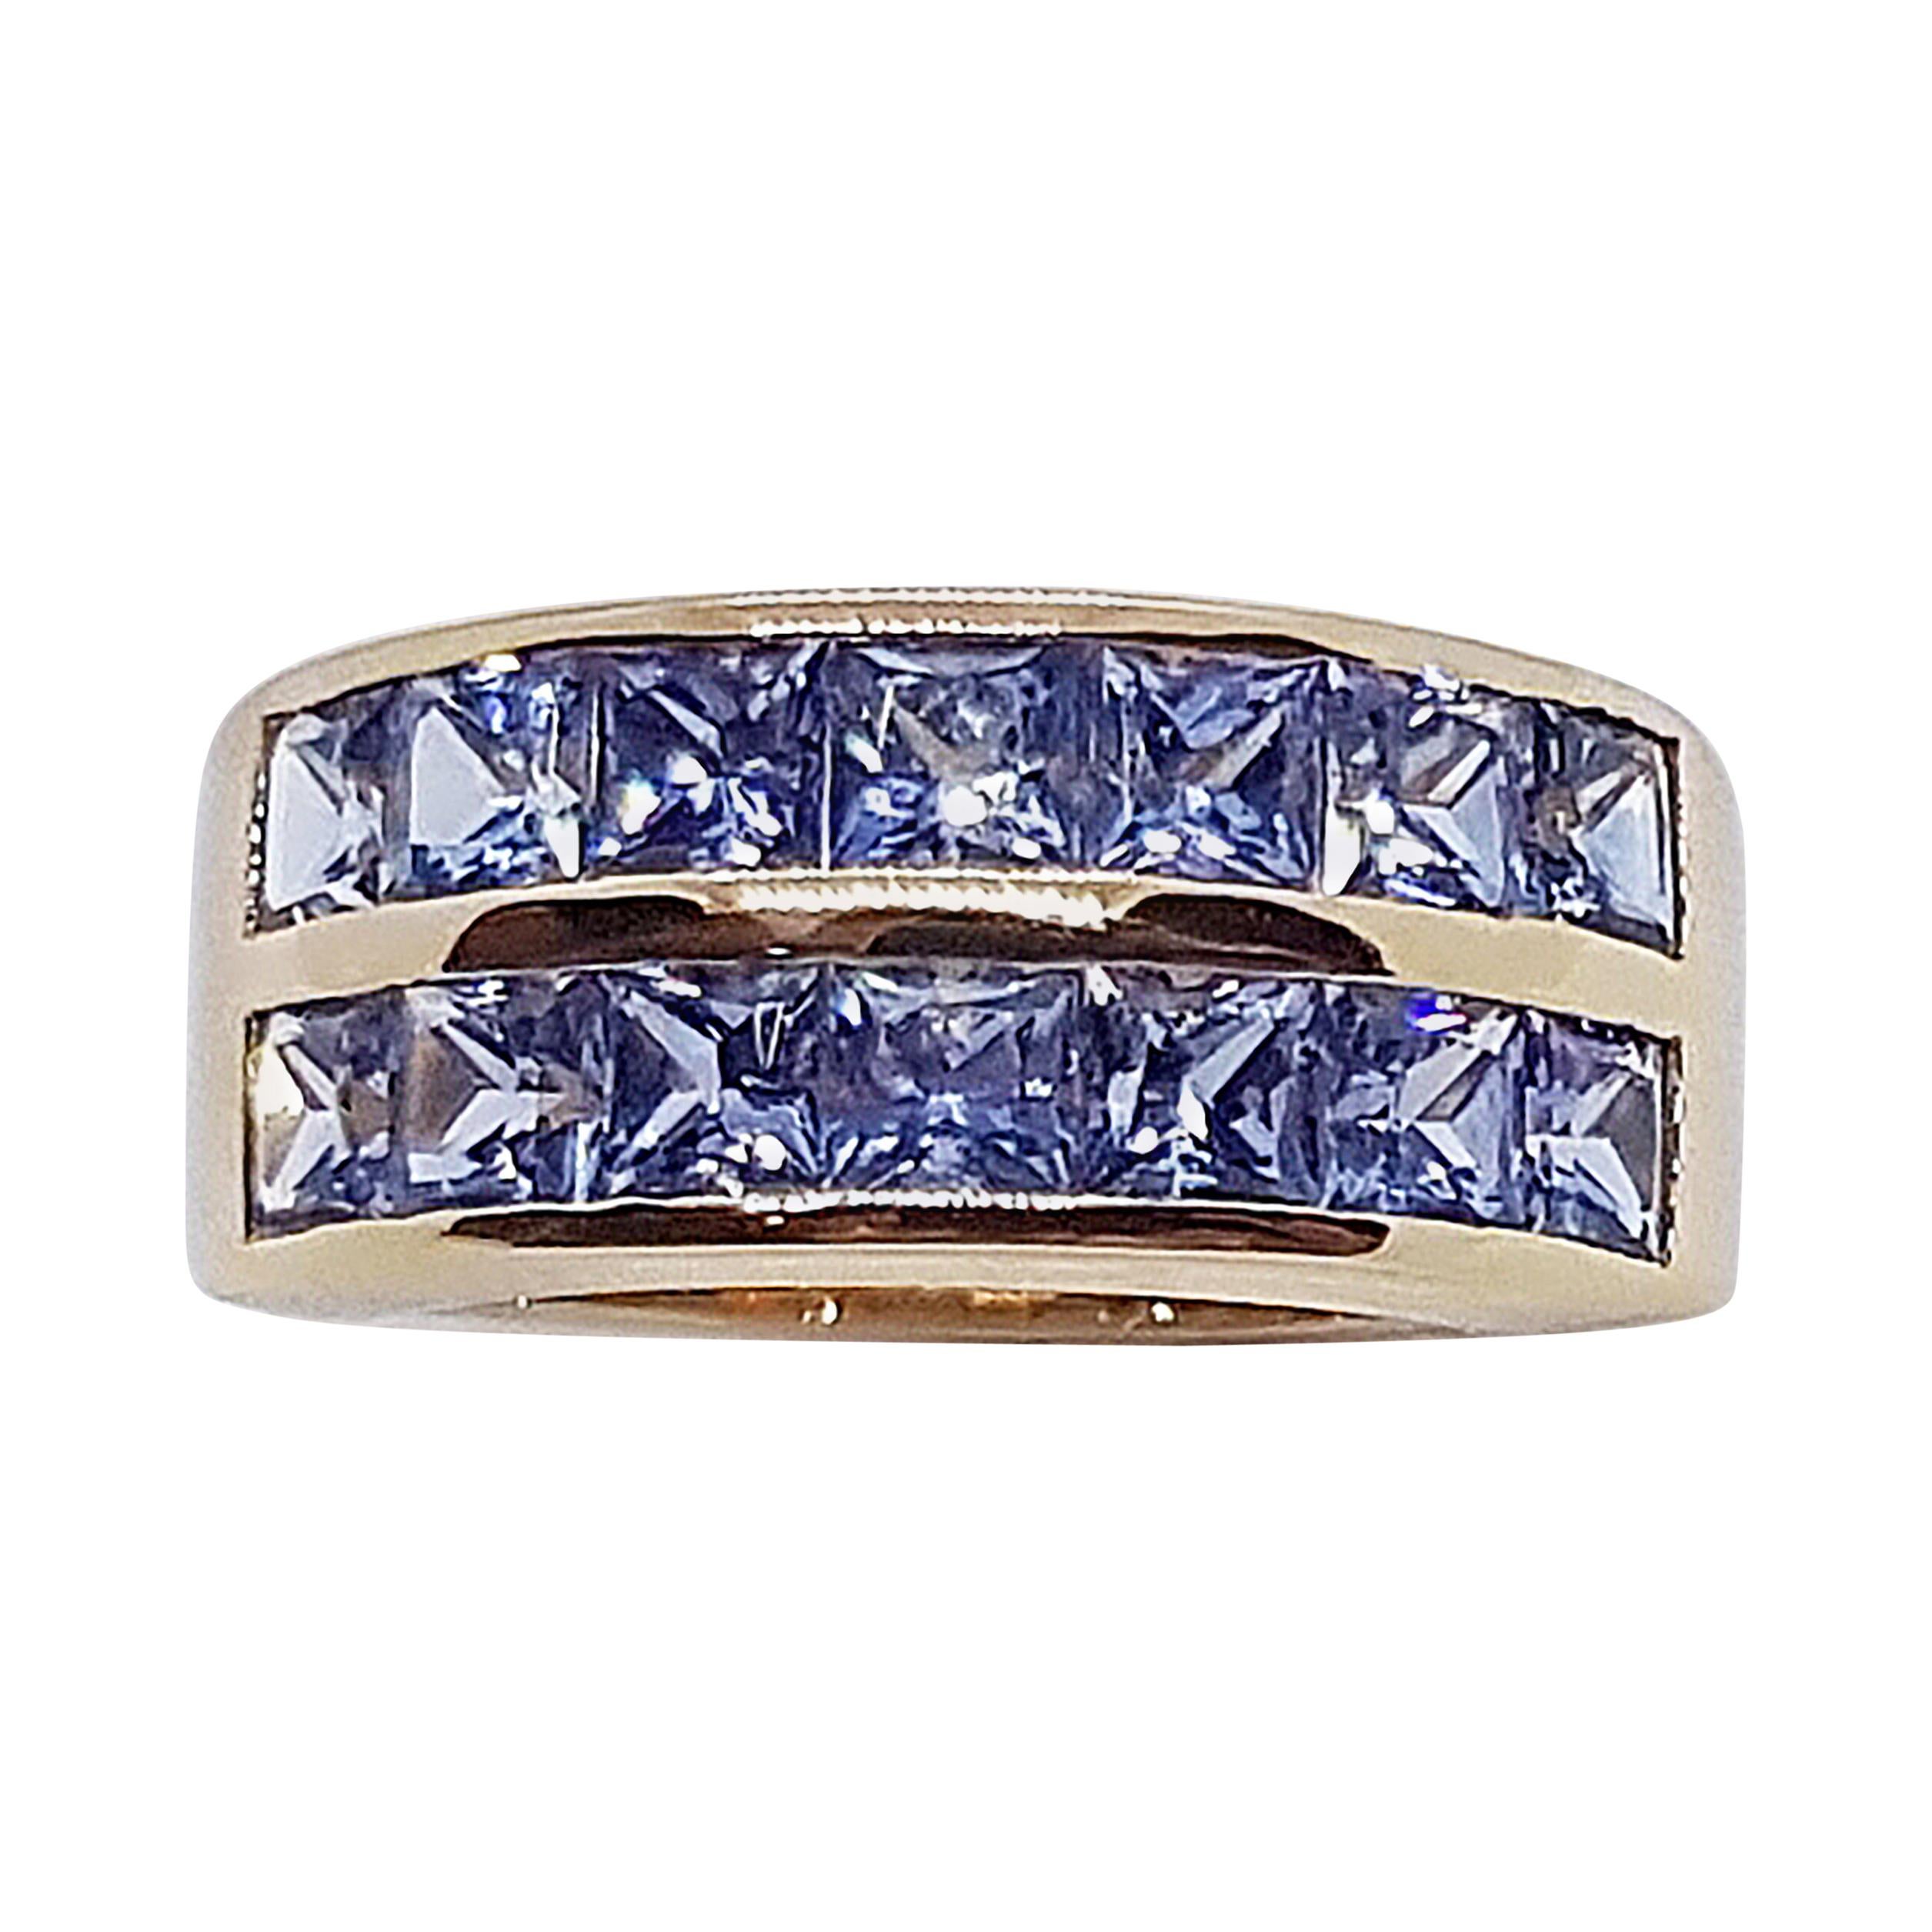 Pastel Blue Sapphire Ring Set in 18 Karat Rose Gold Settings